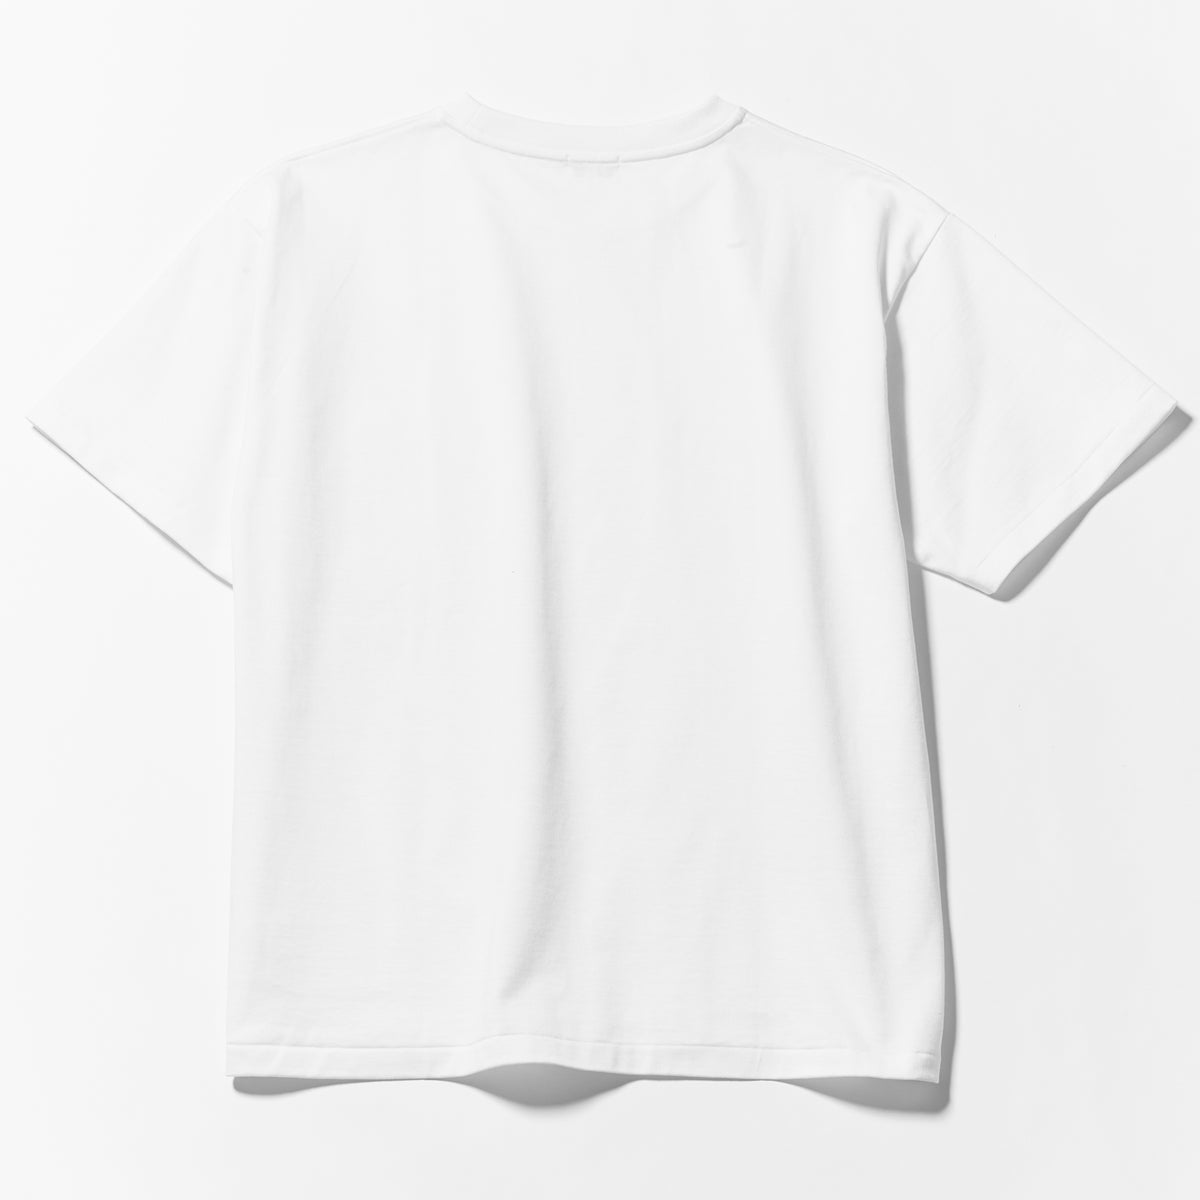 12.8ozの超肉厚なキレイめ胸ポケ付きビッグTシャツ「VENICE(ベニス)」